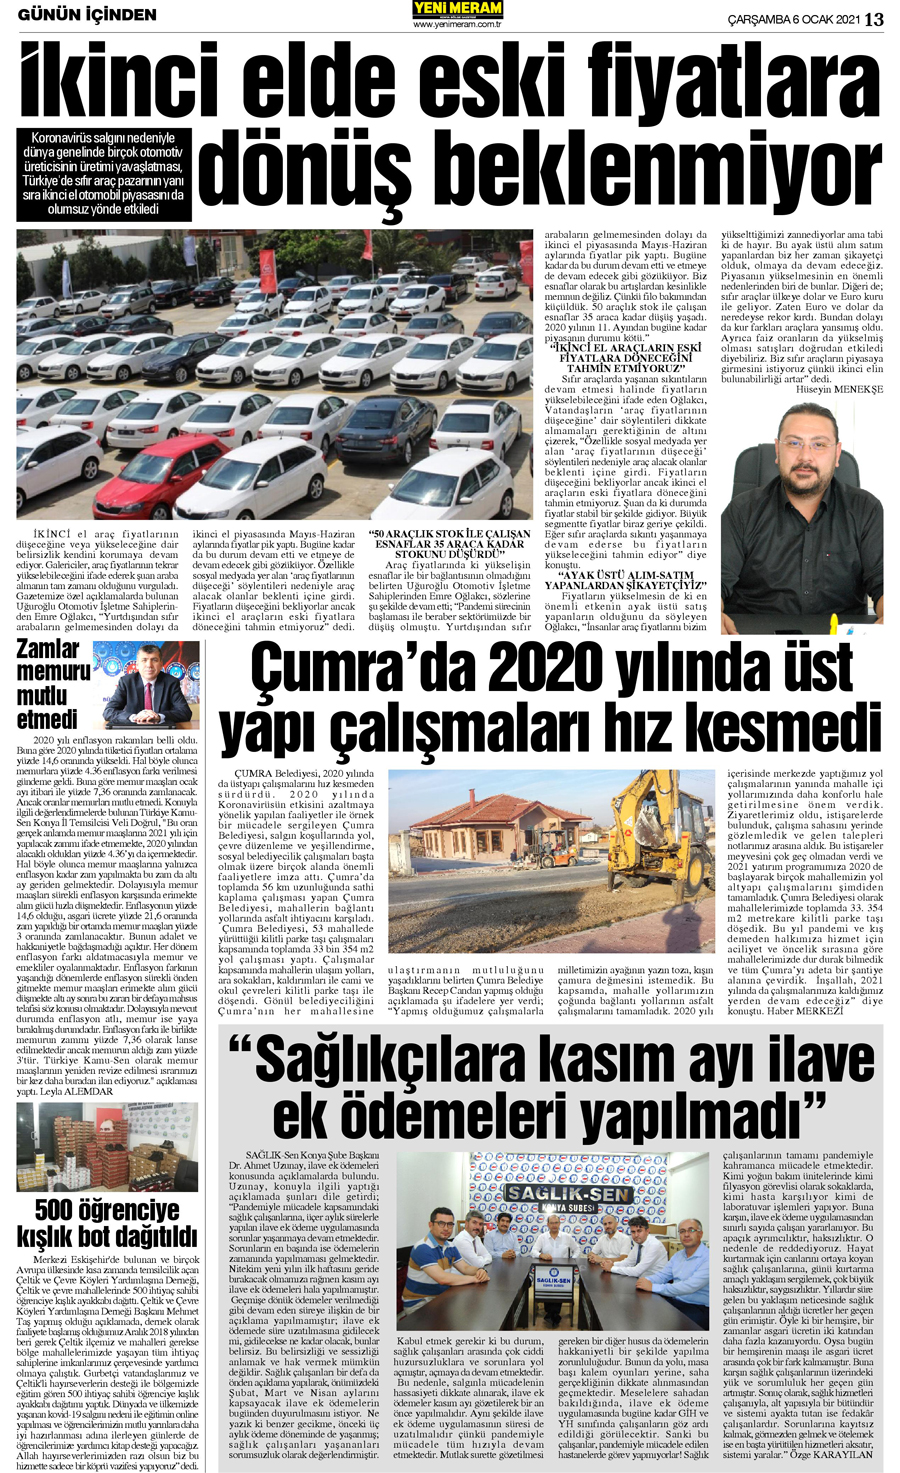 6 Ocak 2021 Yeni Meram Gazetesi